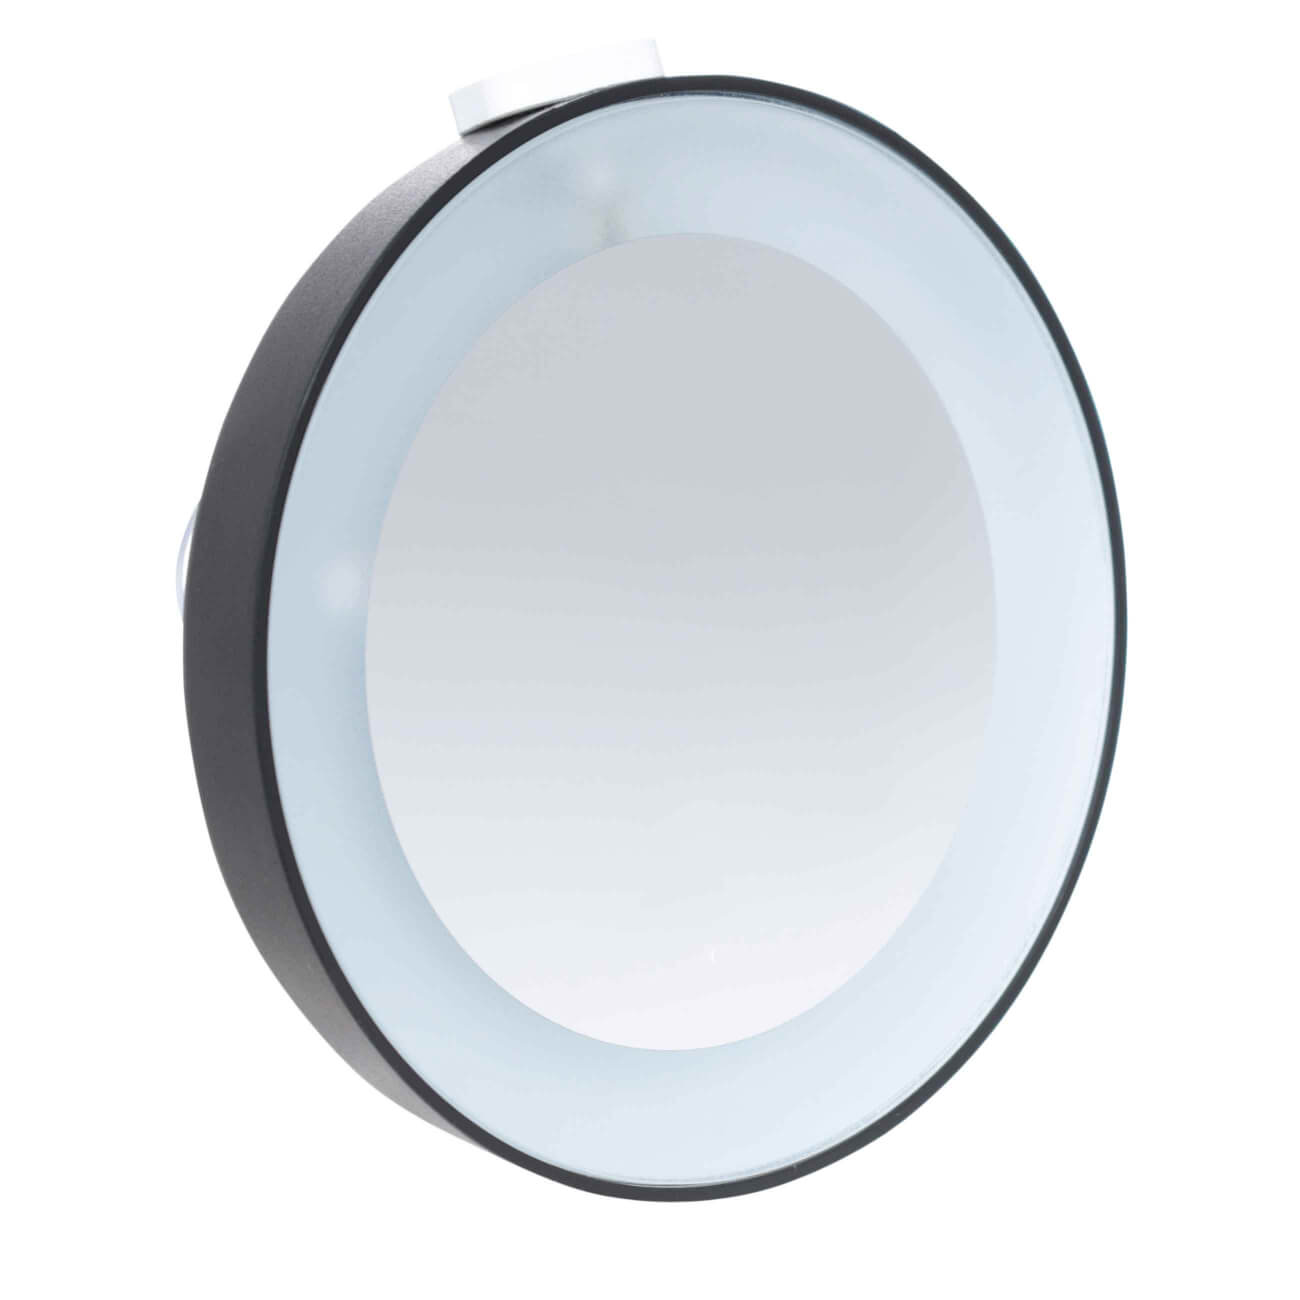 Зеркало подвесное, 10 см, увеличительное, с подсветкой, на присоске, пластик, черное, Mirror зеркало подвесное 10 см увеличительное с подсветкой на присоске пластик черное mirror